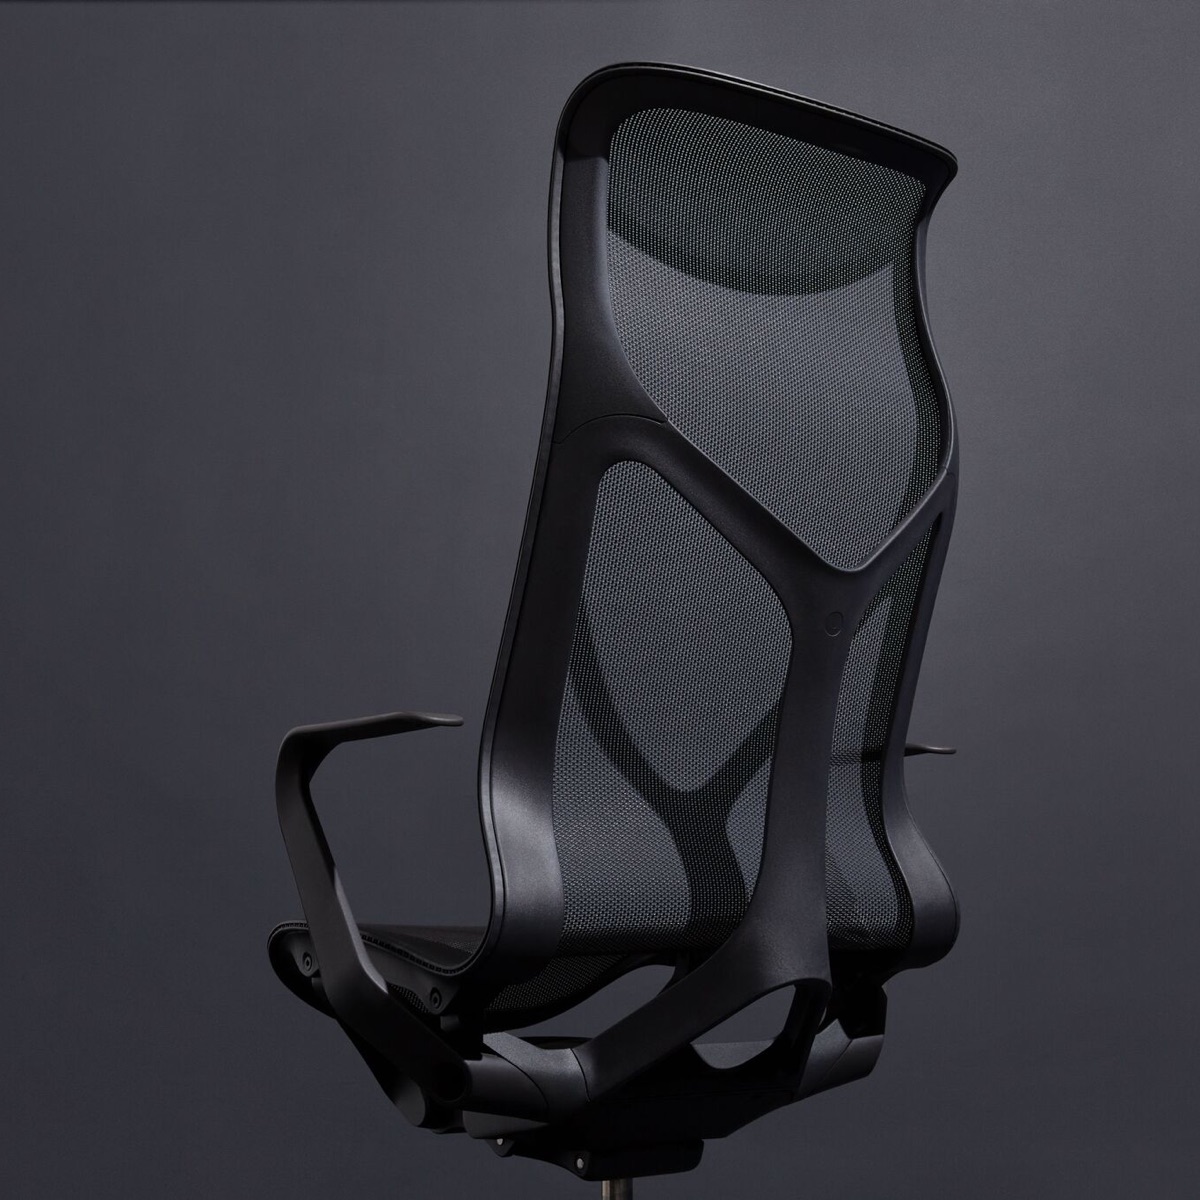 Une chaise Graphite gris foncé Cosm à dossier haut ergonomique avec bras fixes sur un fond gris foncé.